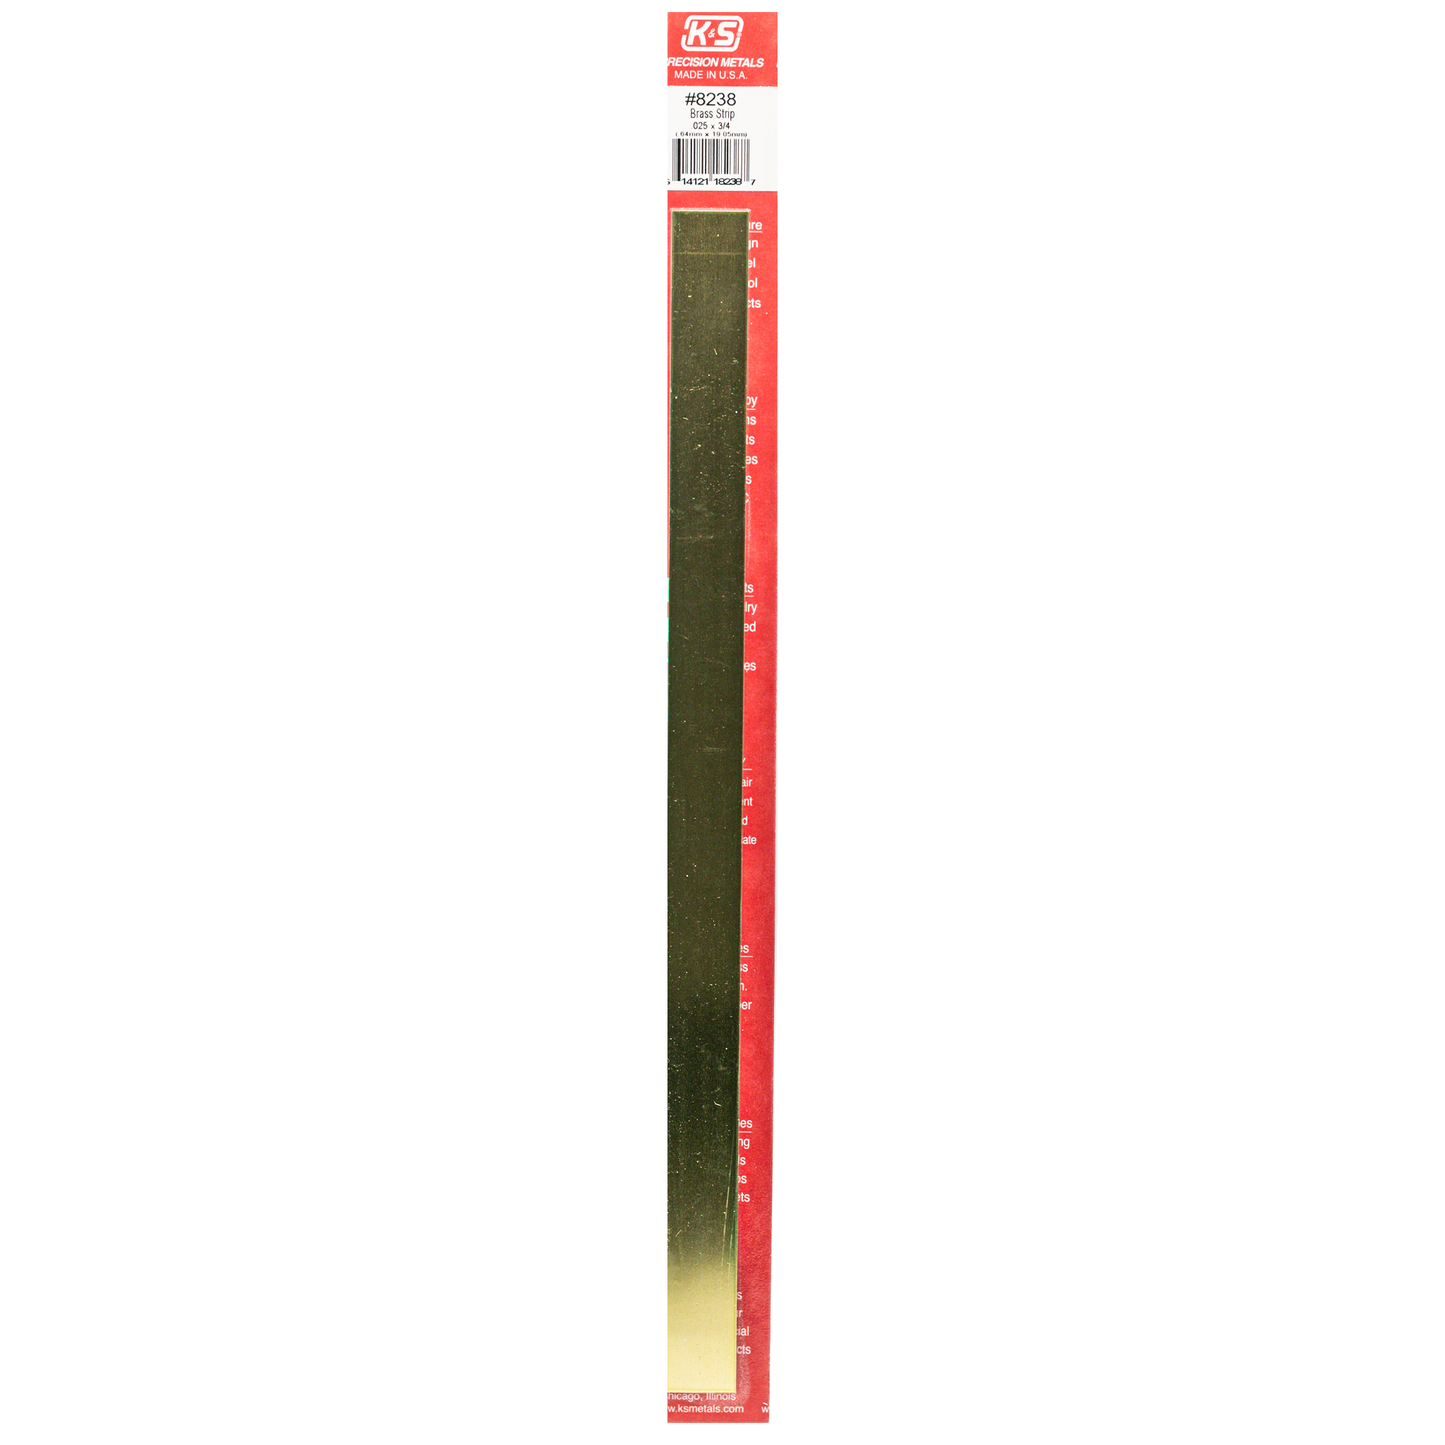 Brass Strip: 0.025" Thick x 3/4" Wide x 12" Long (1 Piece)